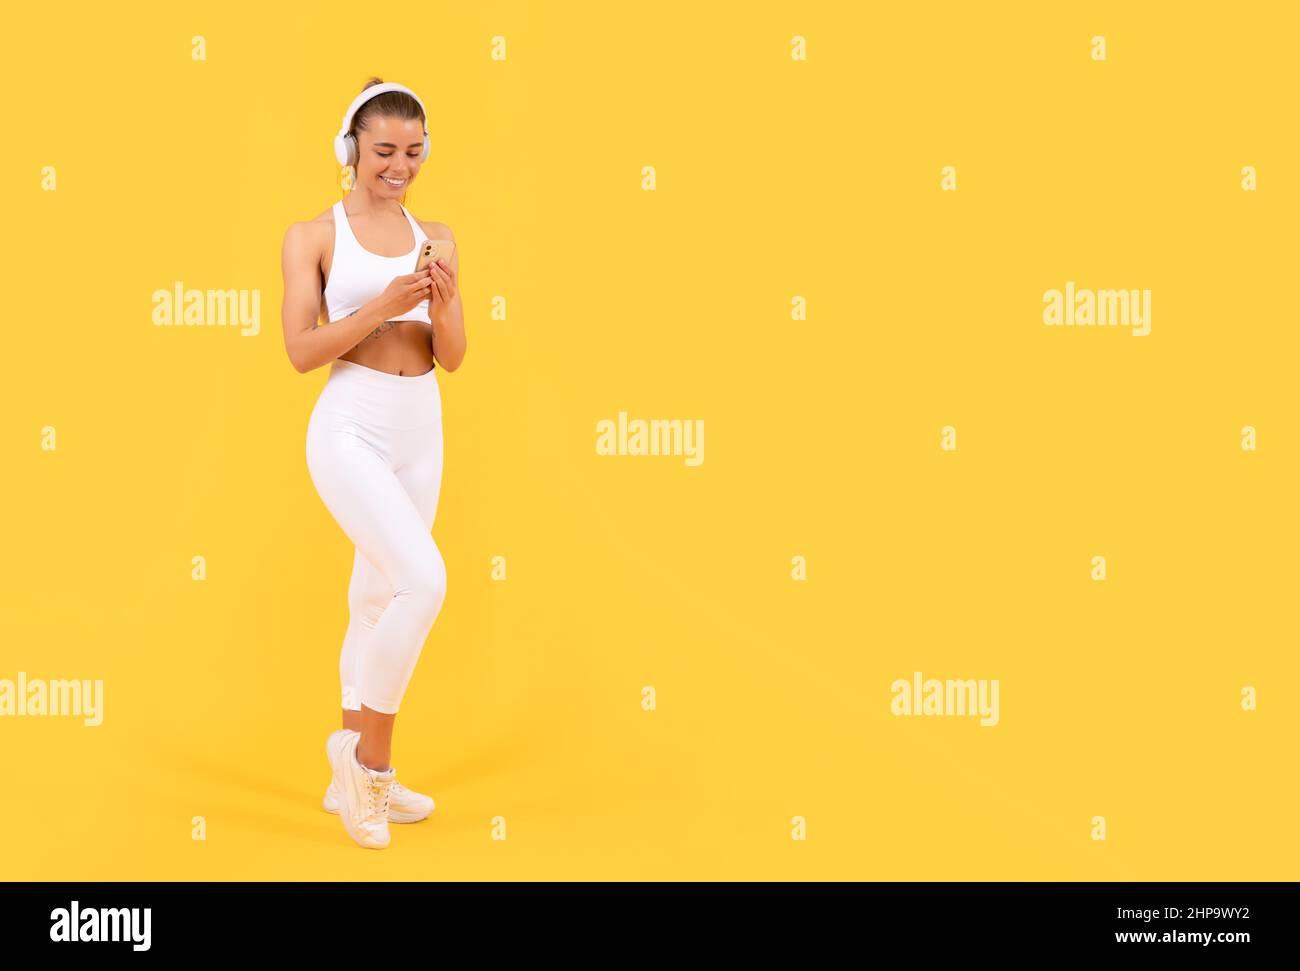 Sportfrau mit Kopfhörer und Smartphone auf gelbem Hintergrund. Platz kopieren Stockfoto